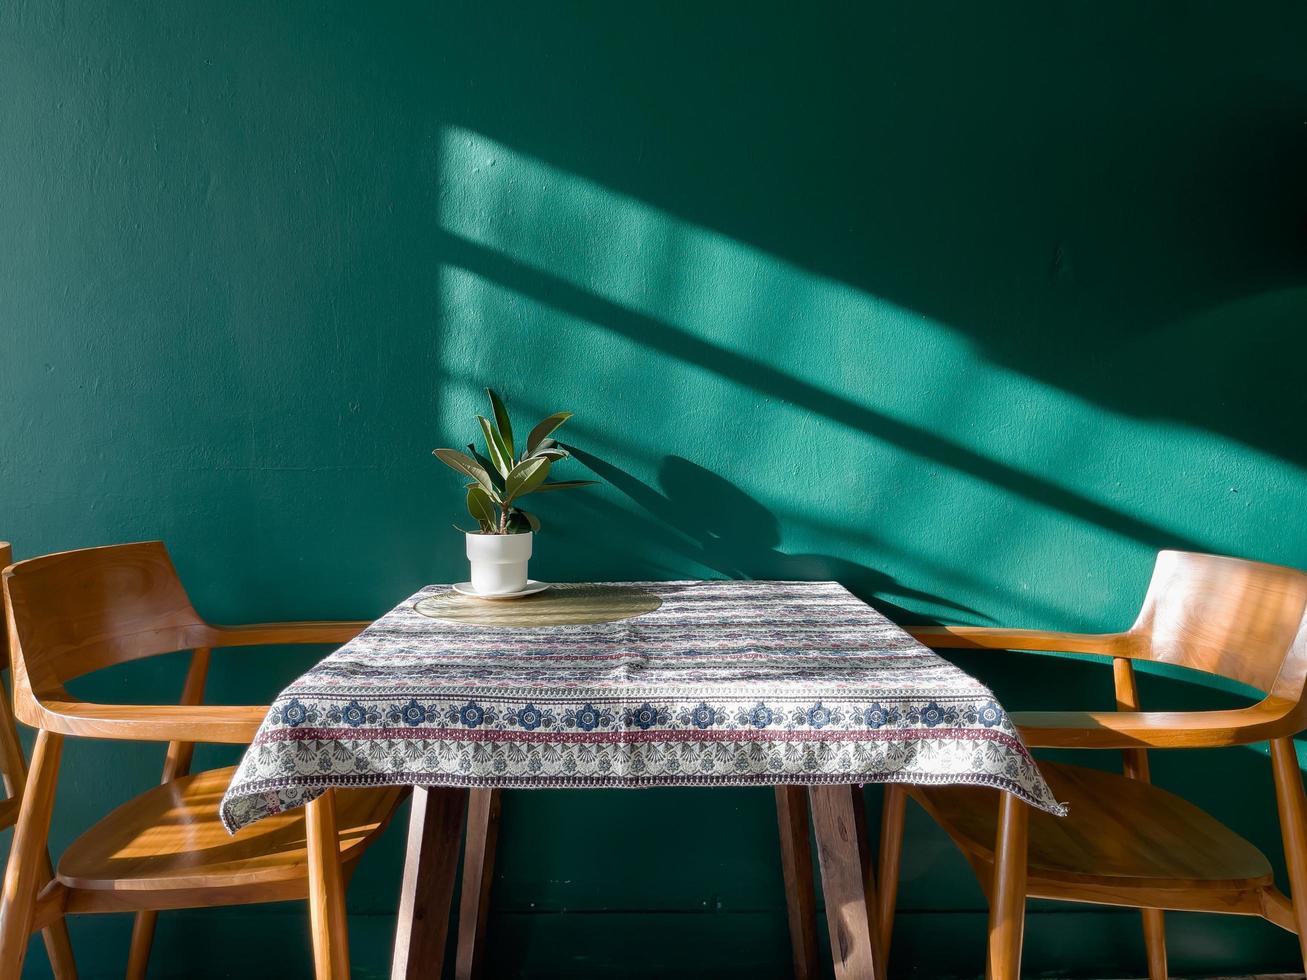 table d'espace libre avec plante verte photo